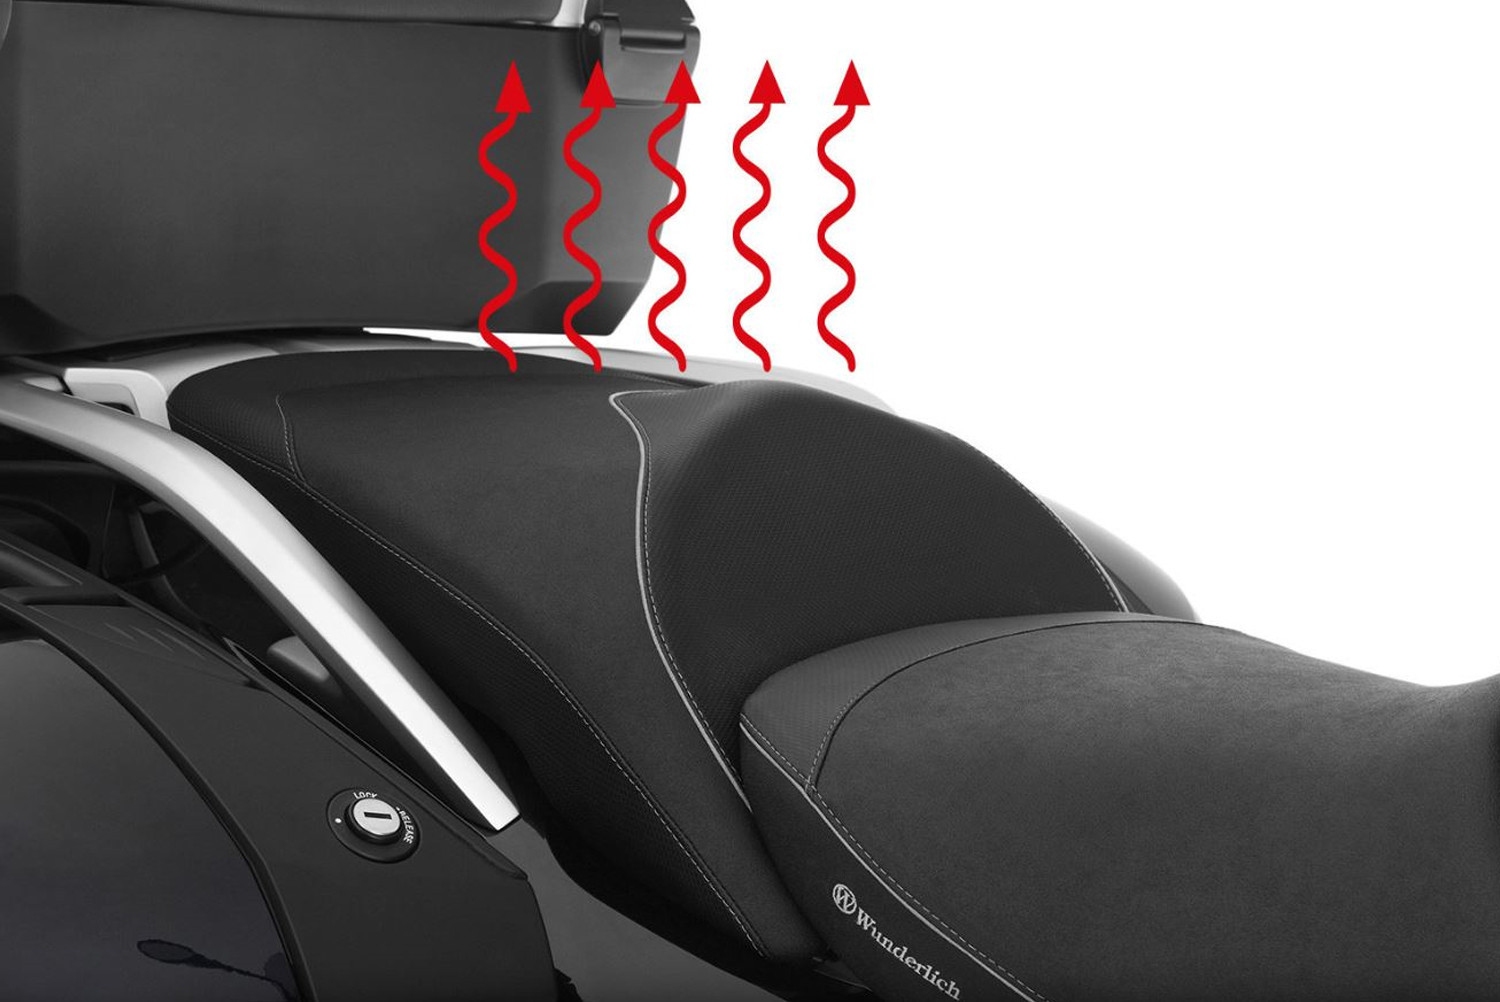 *Wunderlich Beifahrer Sitzbank Aktivkomfort Sitzheizung & Geleinlage Standard Schwarz K52*